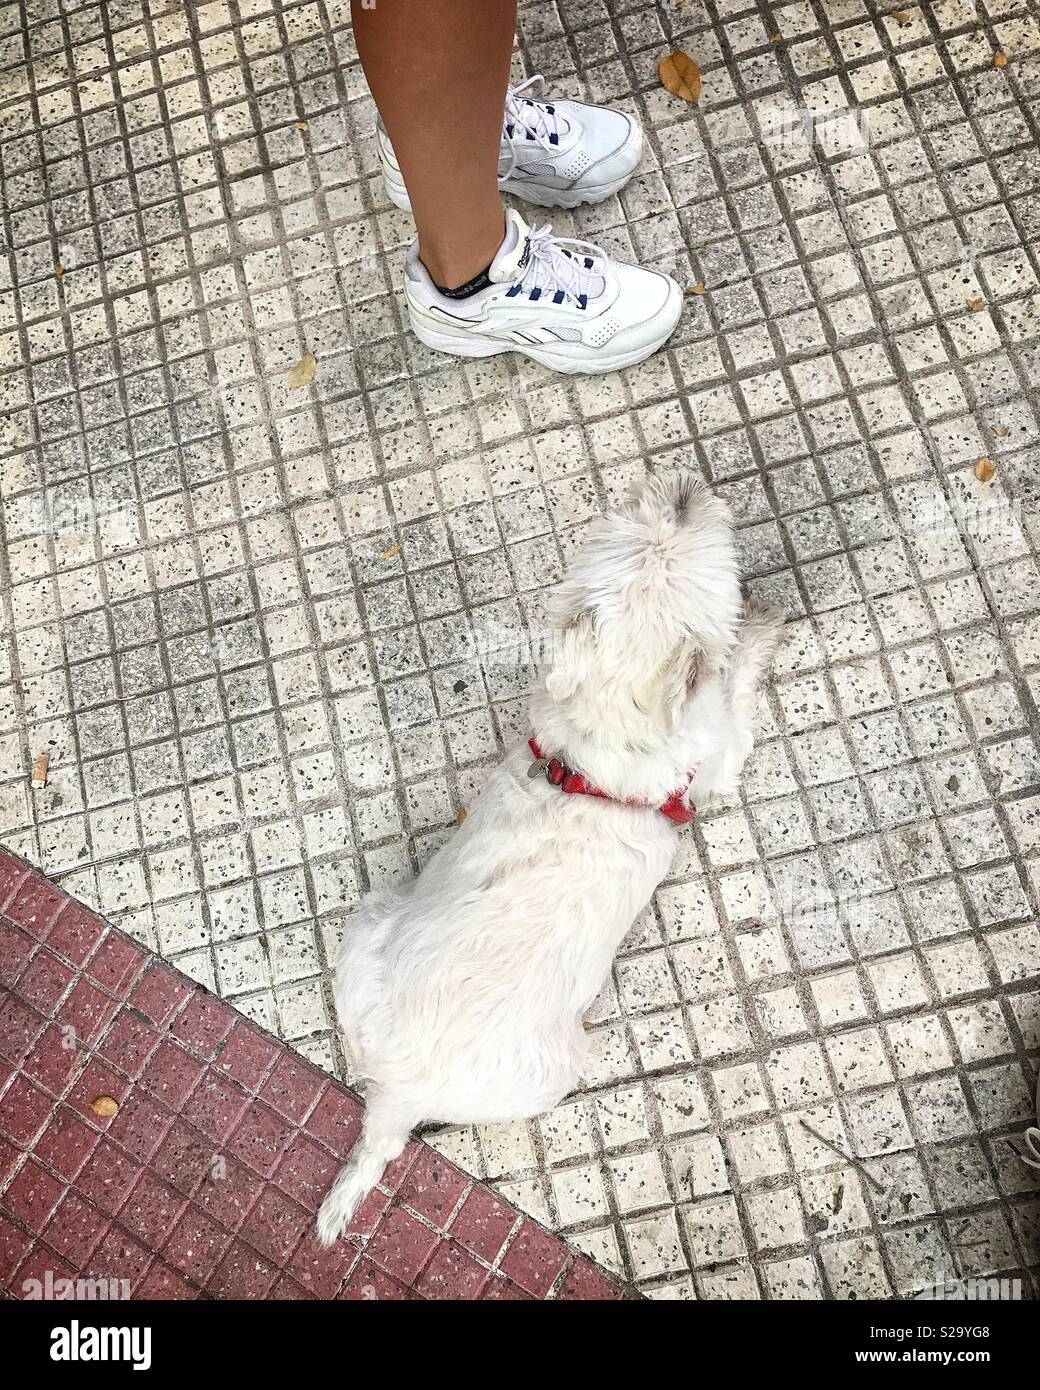 Di piccole dimensioni e di colore bianco scotch terrier cane con collare rosso viste da sopra in appoggio su bianco con piastrelle di ceramica in marciapiede ai piedi del suo proprietario in bianco dei formatori Foto Stock